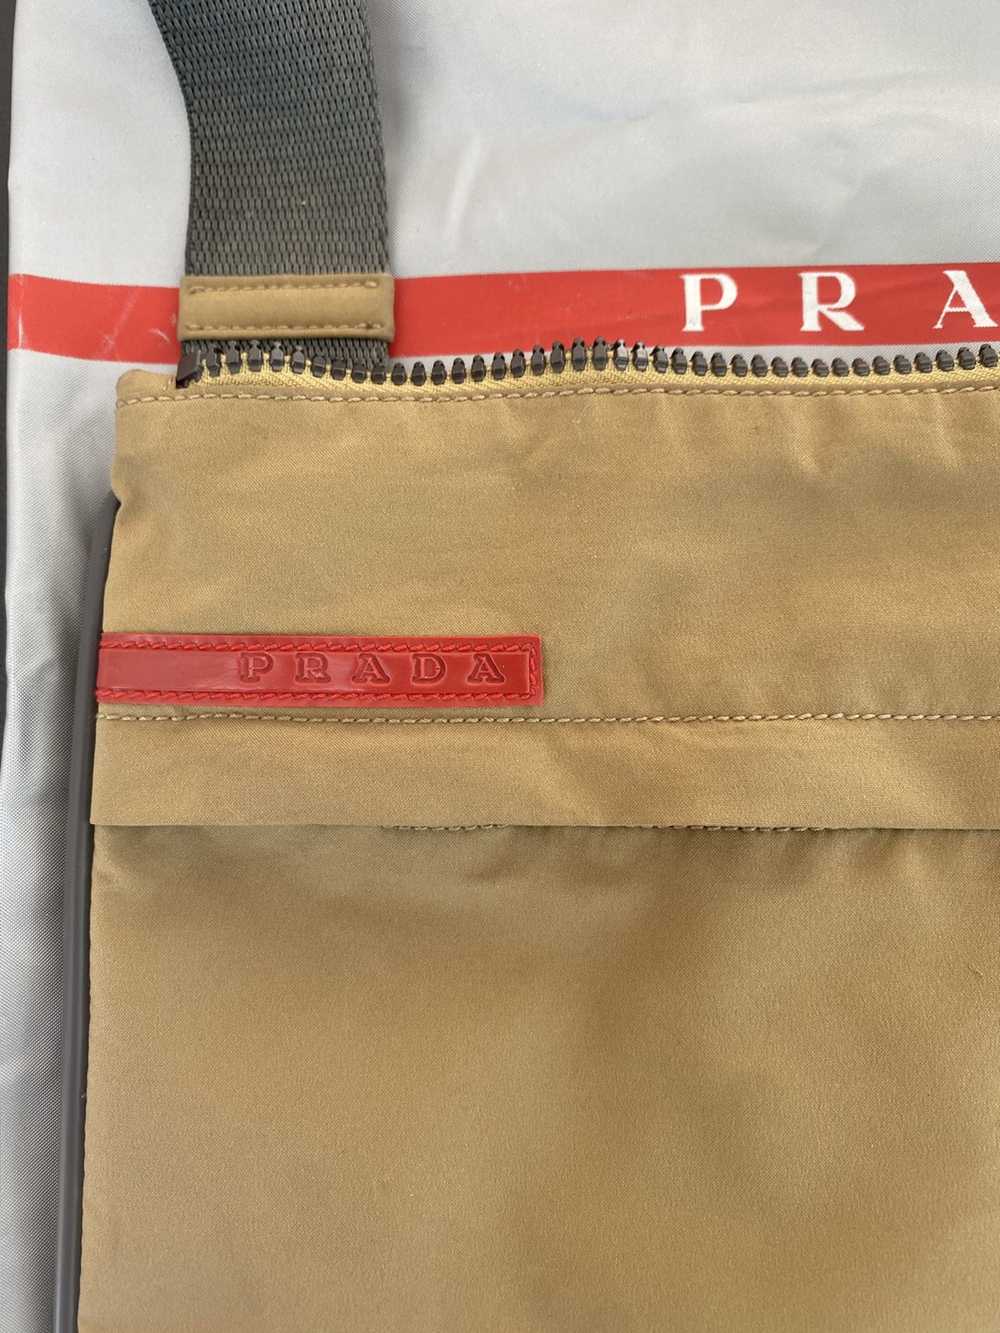 Prada Prada Linea Rossa crossbody bag - image 5